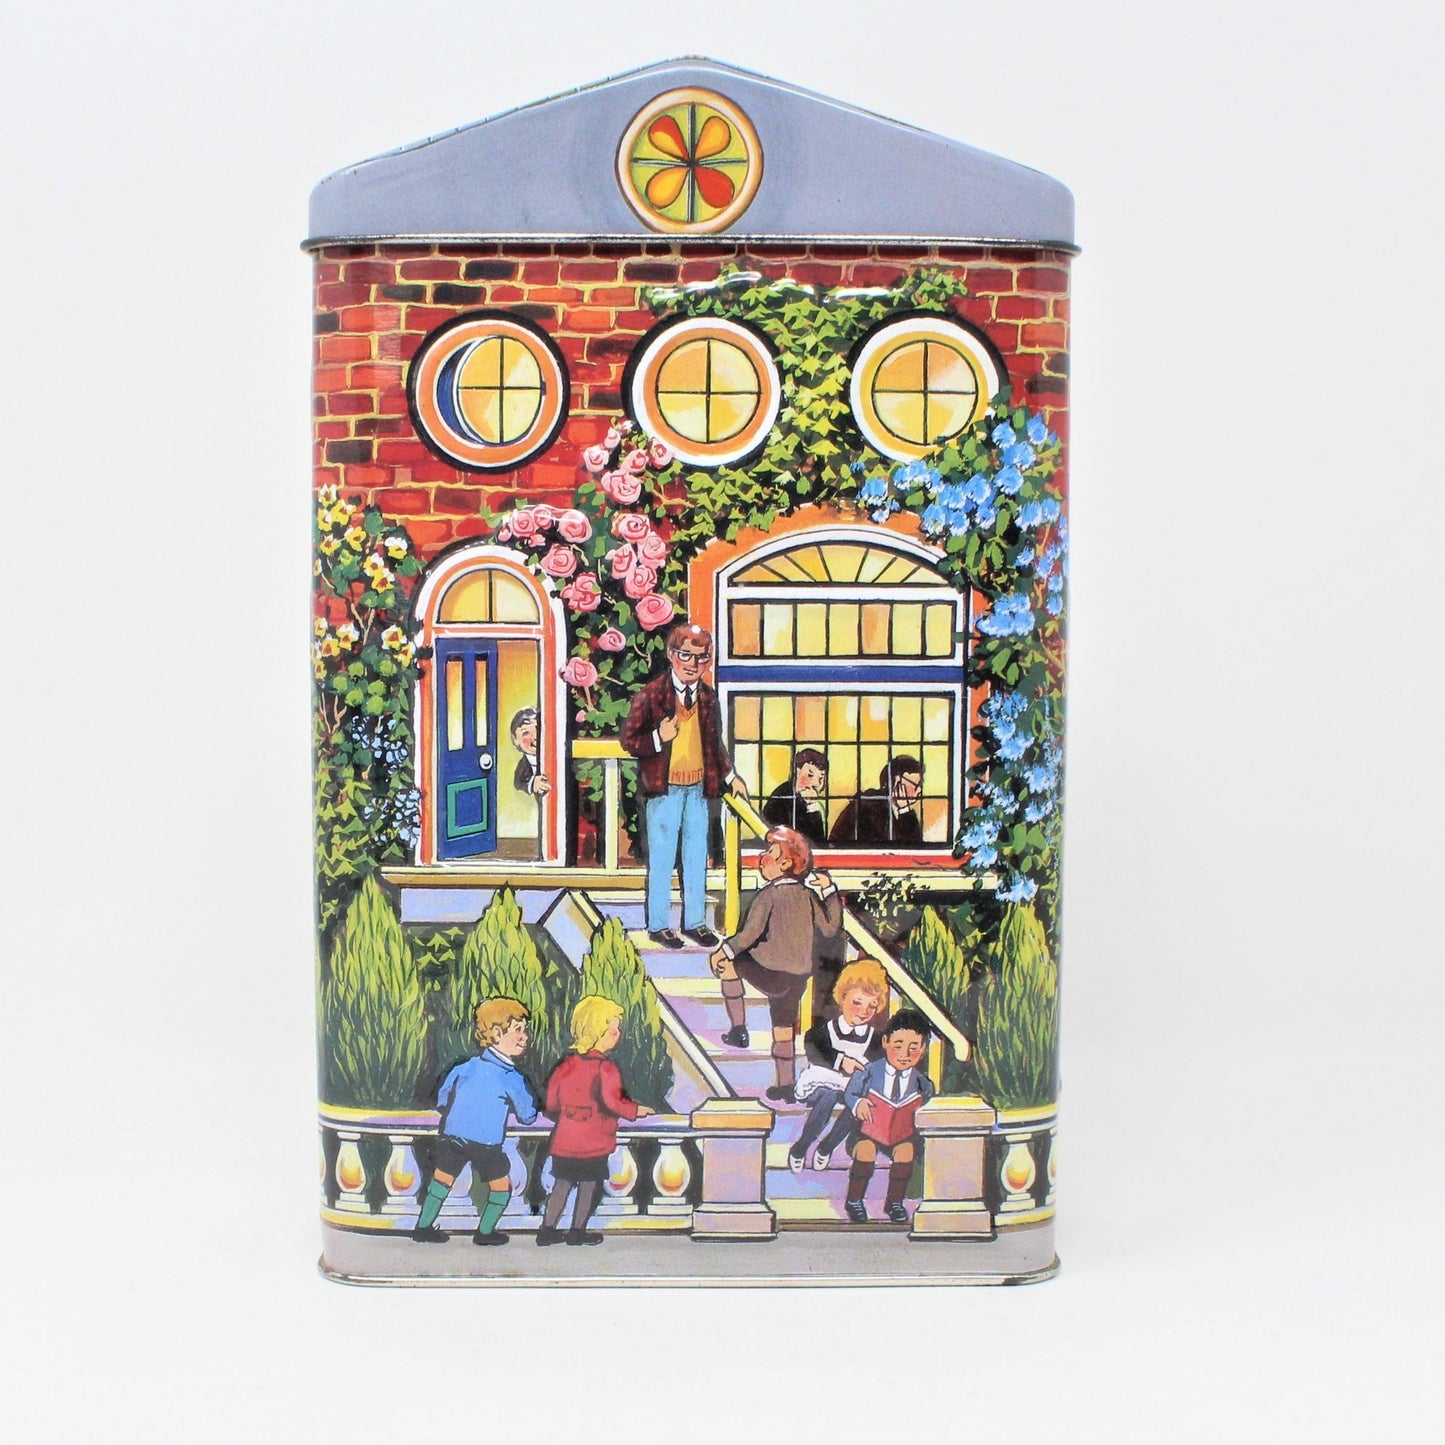 Gift Tin / Cookie Tin, Hershey's Village Tin, School House, England, 2000